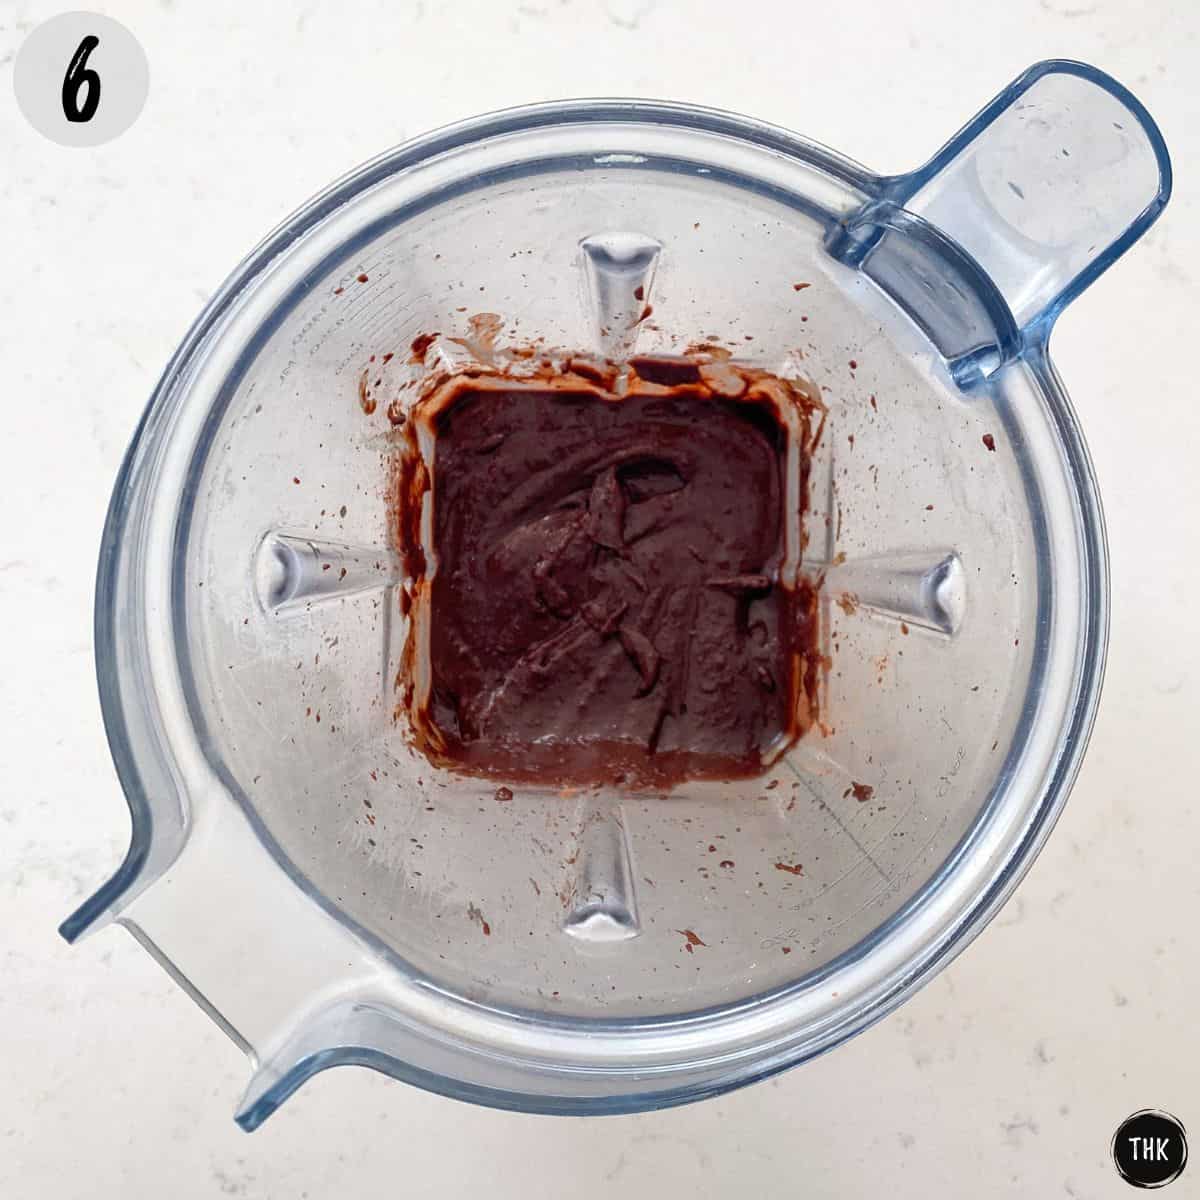 Chocolate frosting inside blender.